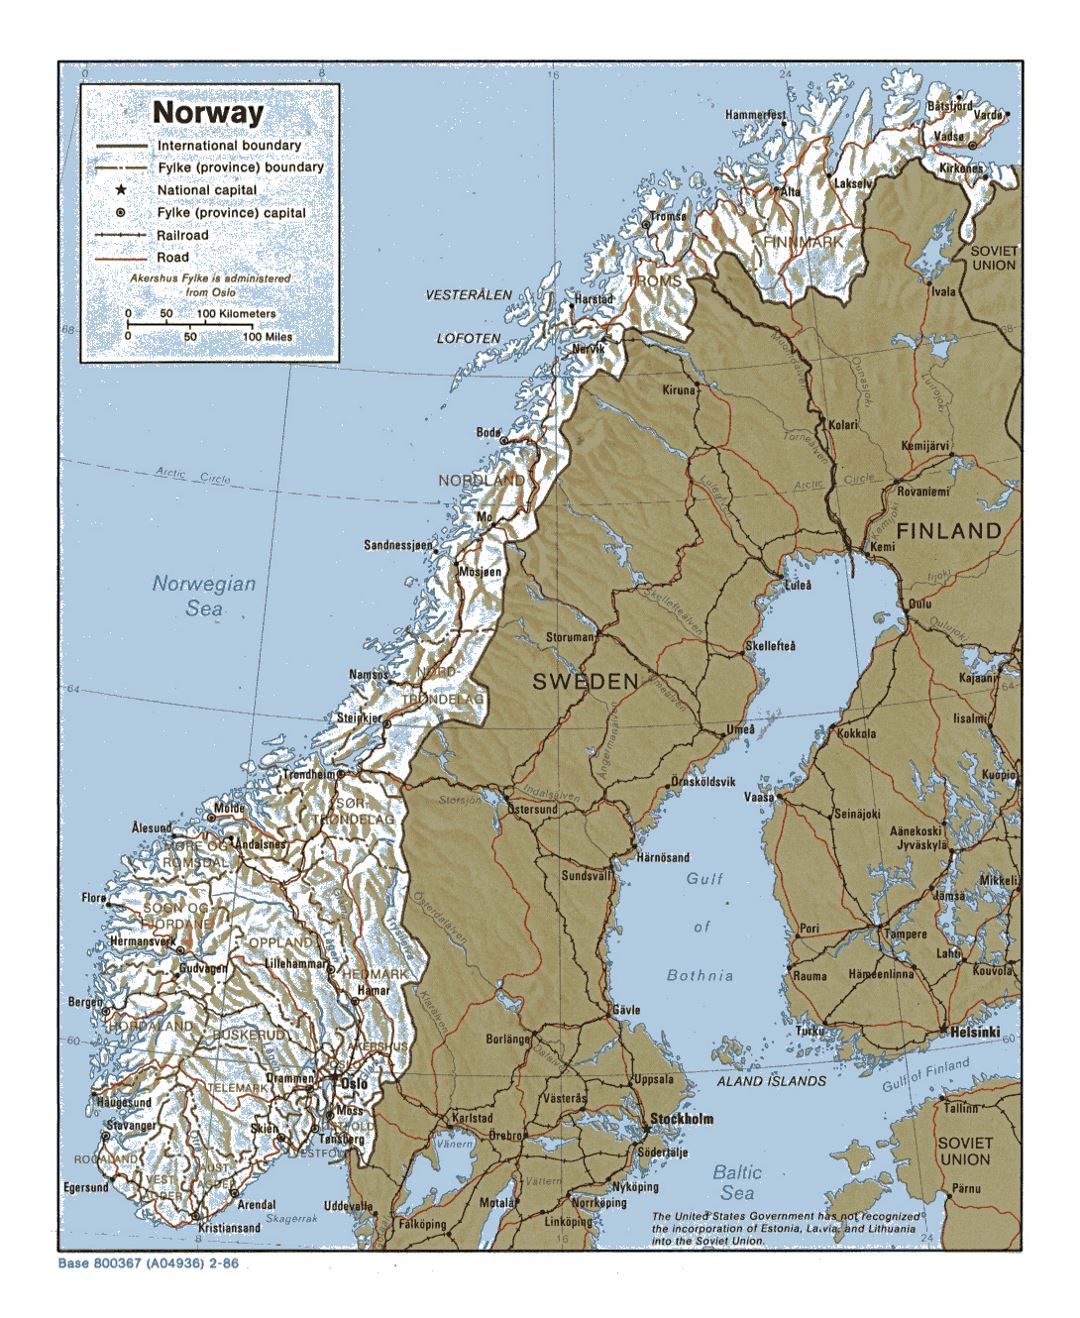 Detallado mapa político y administrativo de Noruega con alivio, carreteras y principales ciudades - 1986